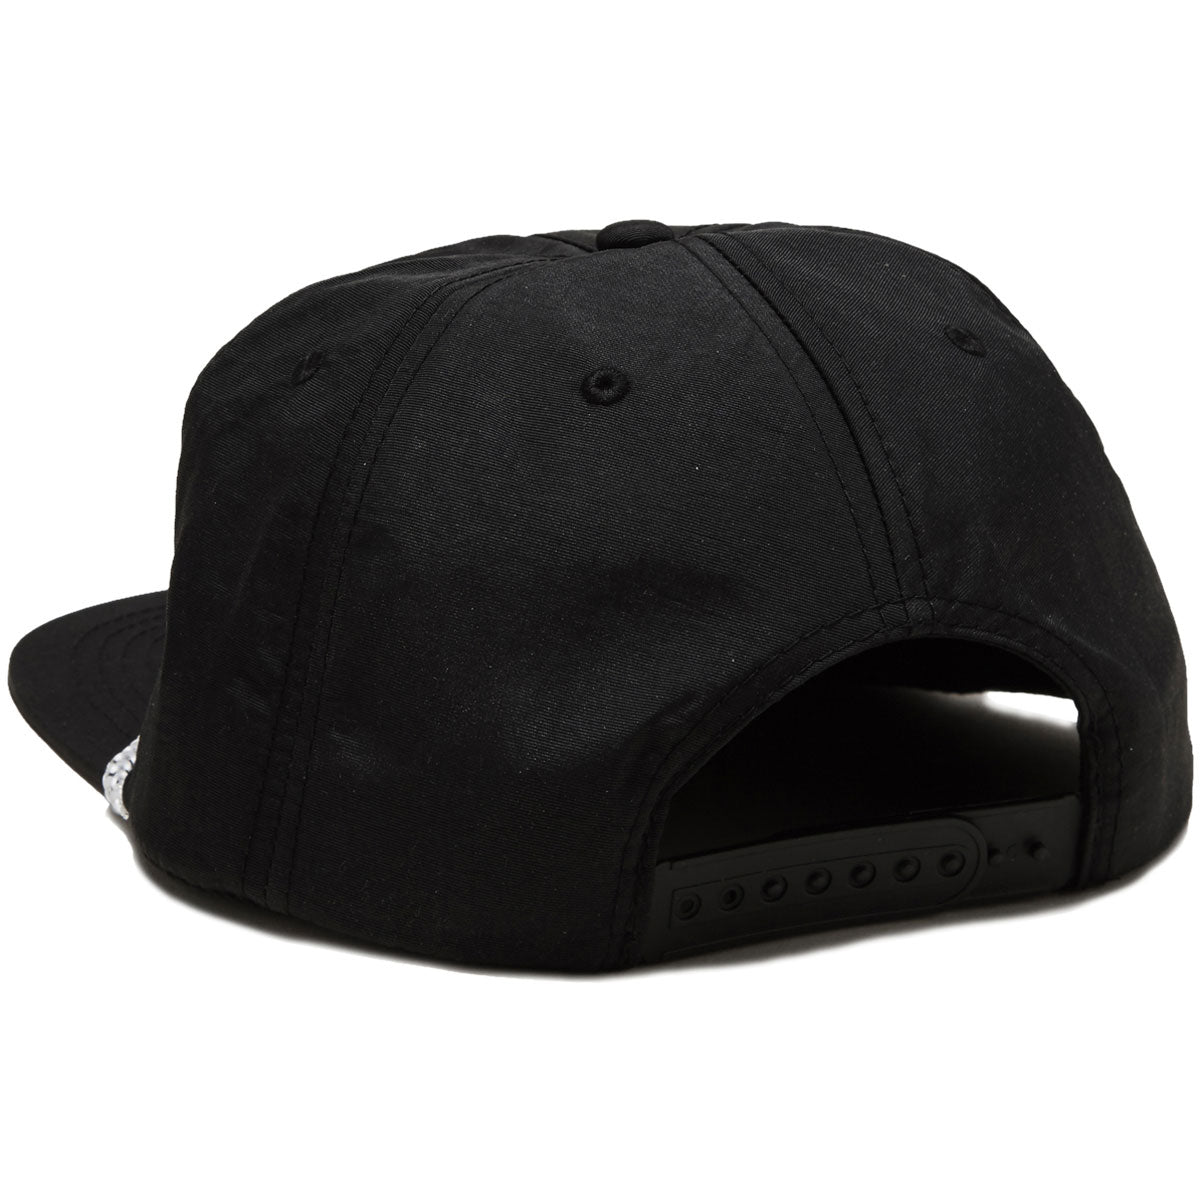 April Chrome Logo Hat - Black image 2